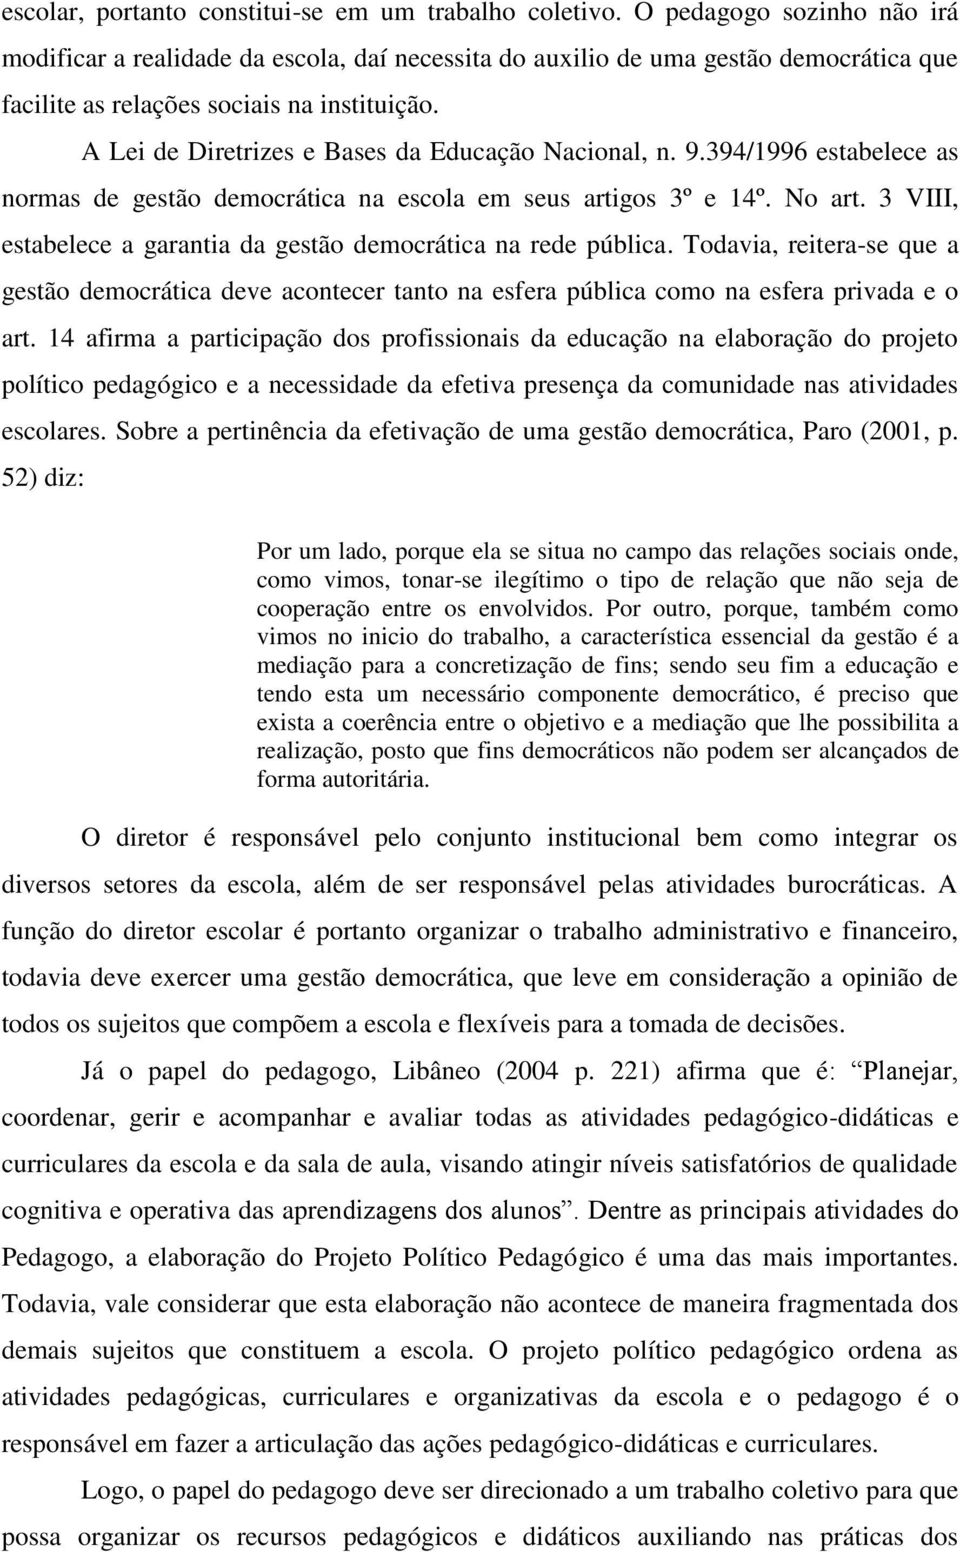 A Lei de Diretrizes e Bases da Educação Nacional, n. 9.394/1996 estabelece as normas de gestão democrática na escola em seus artigos 3º e 14º. No art.